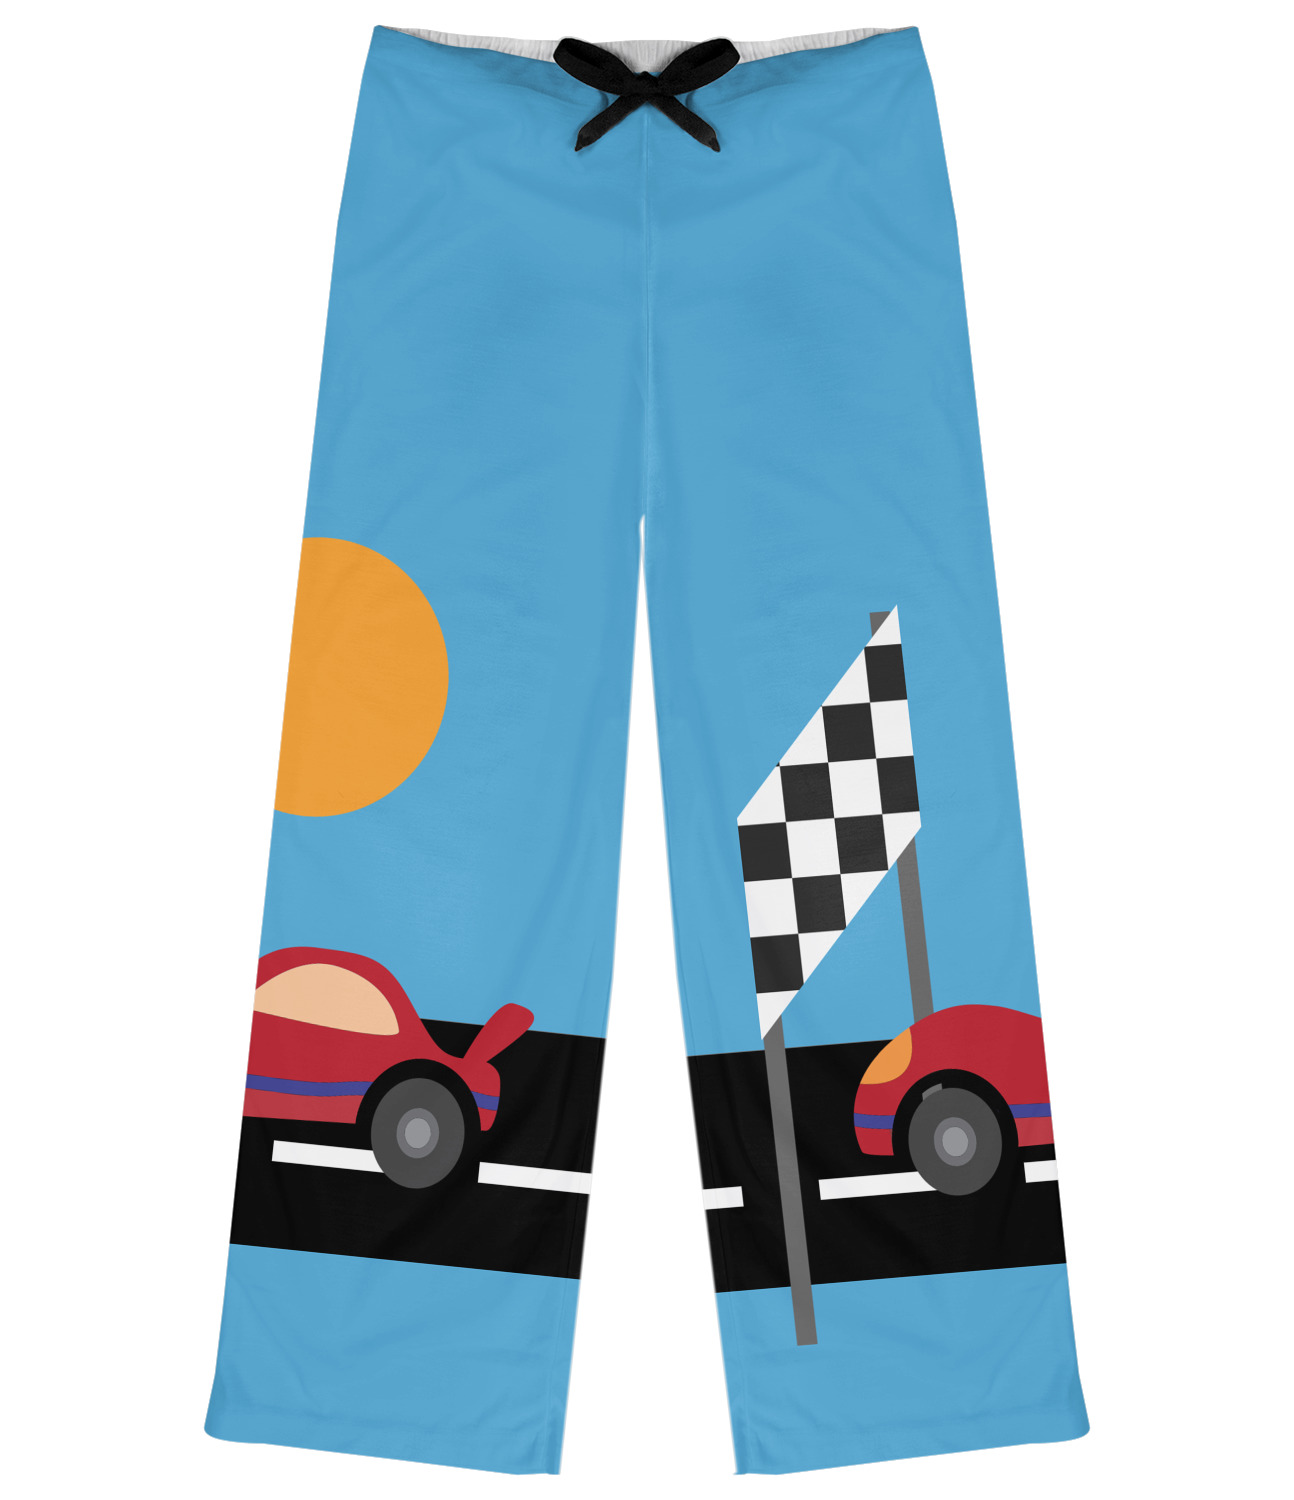 Race car pants